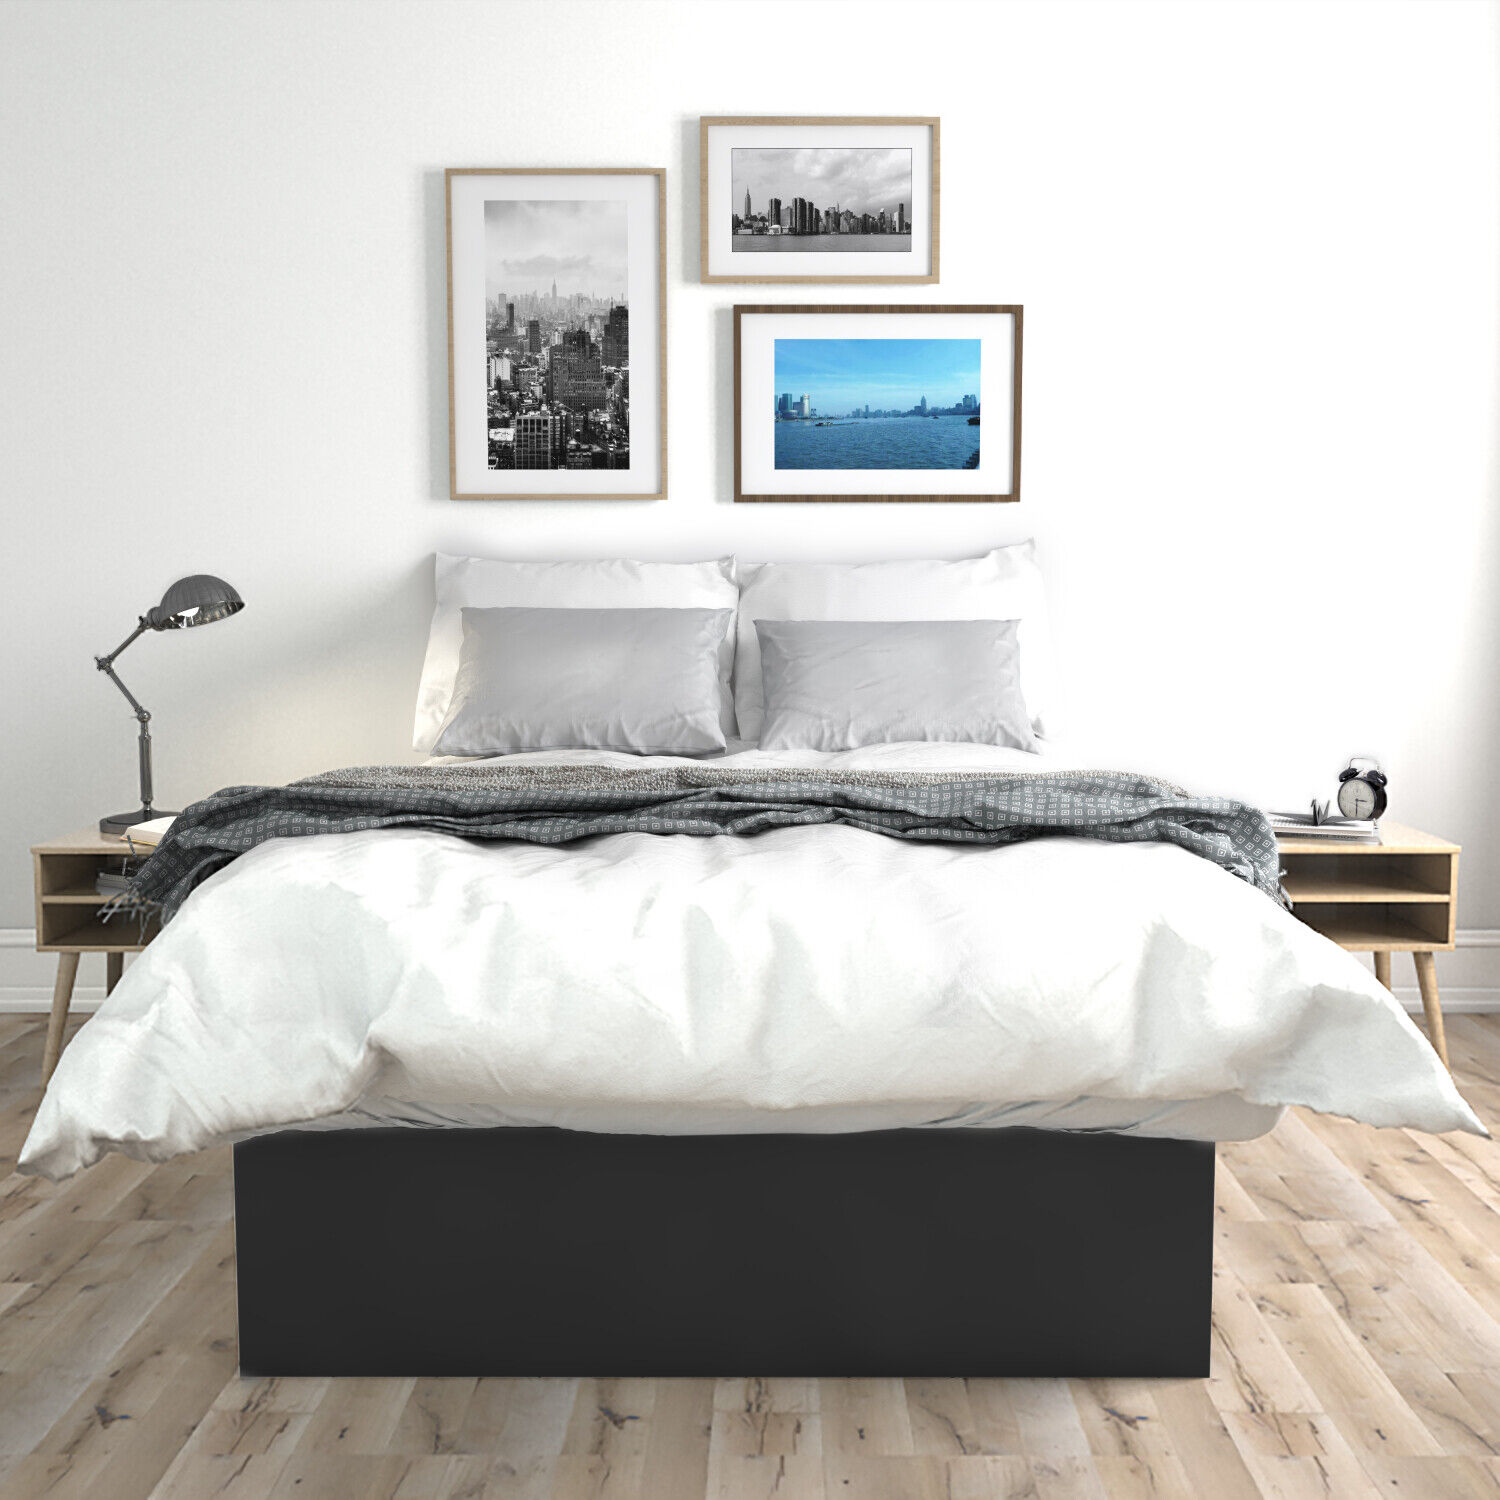 Premier Platform Bed Frame Wood Twin, Premier Platform Bed Frame King